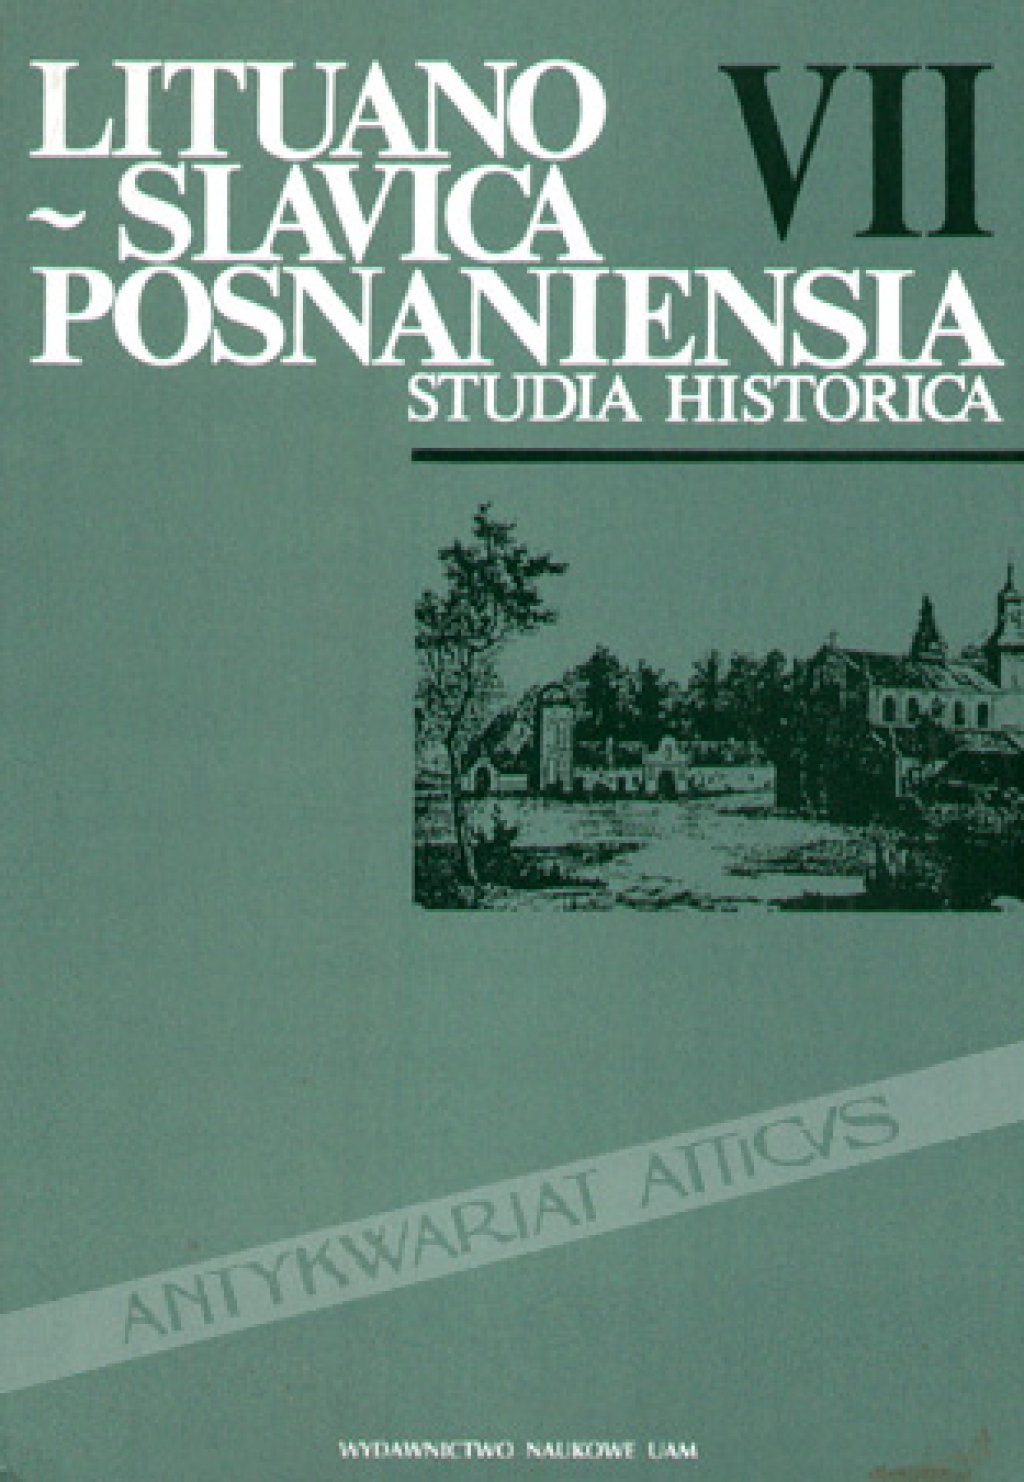 Lituano-Slavica Posnaniensia. Studia historica, vol. VII